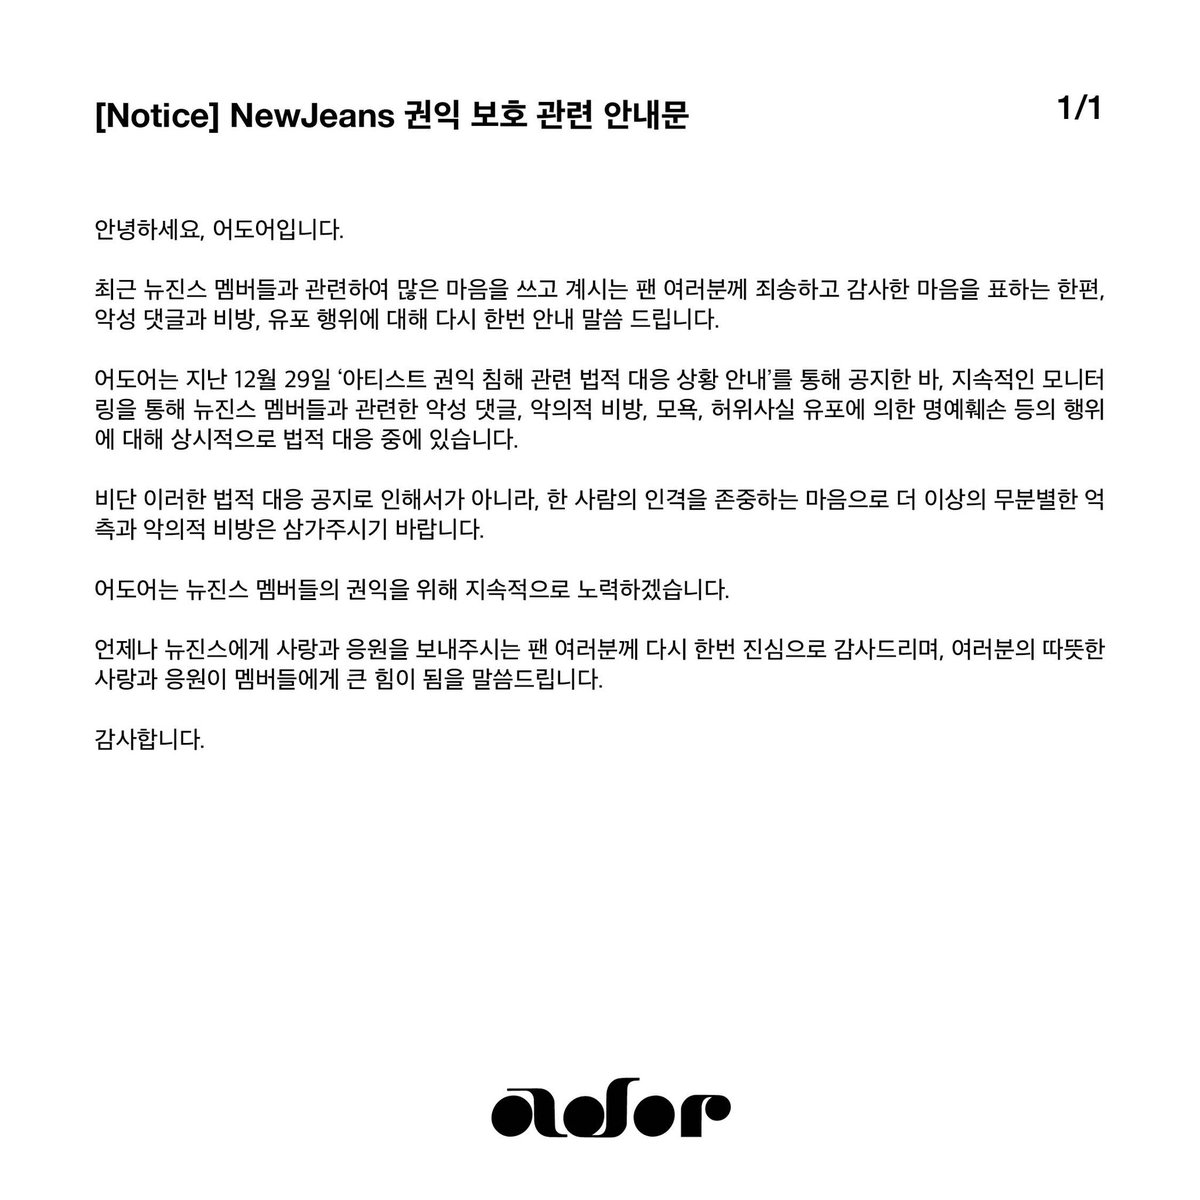 [NOTICE] NewJeans 권익 보호 관련 안내문